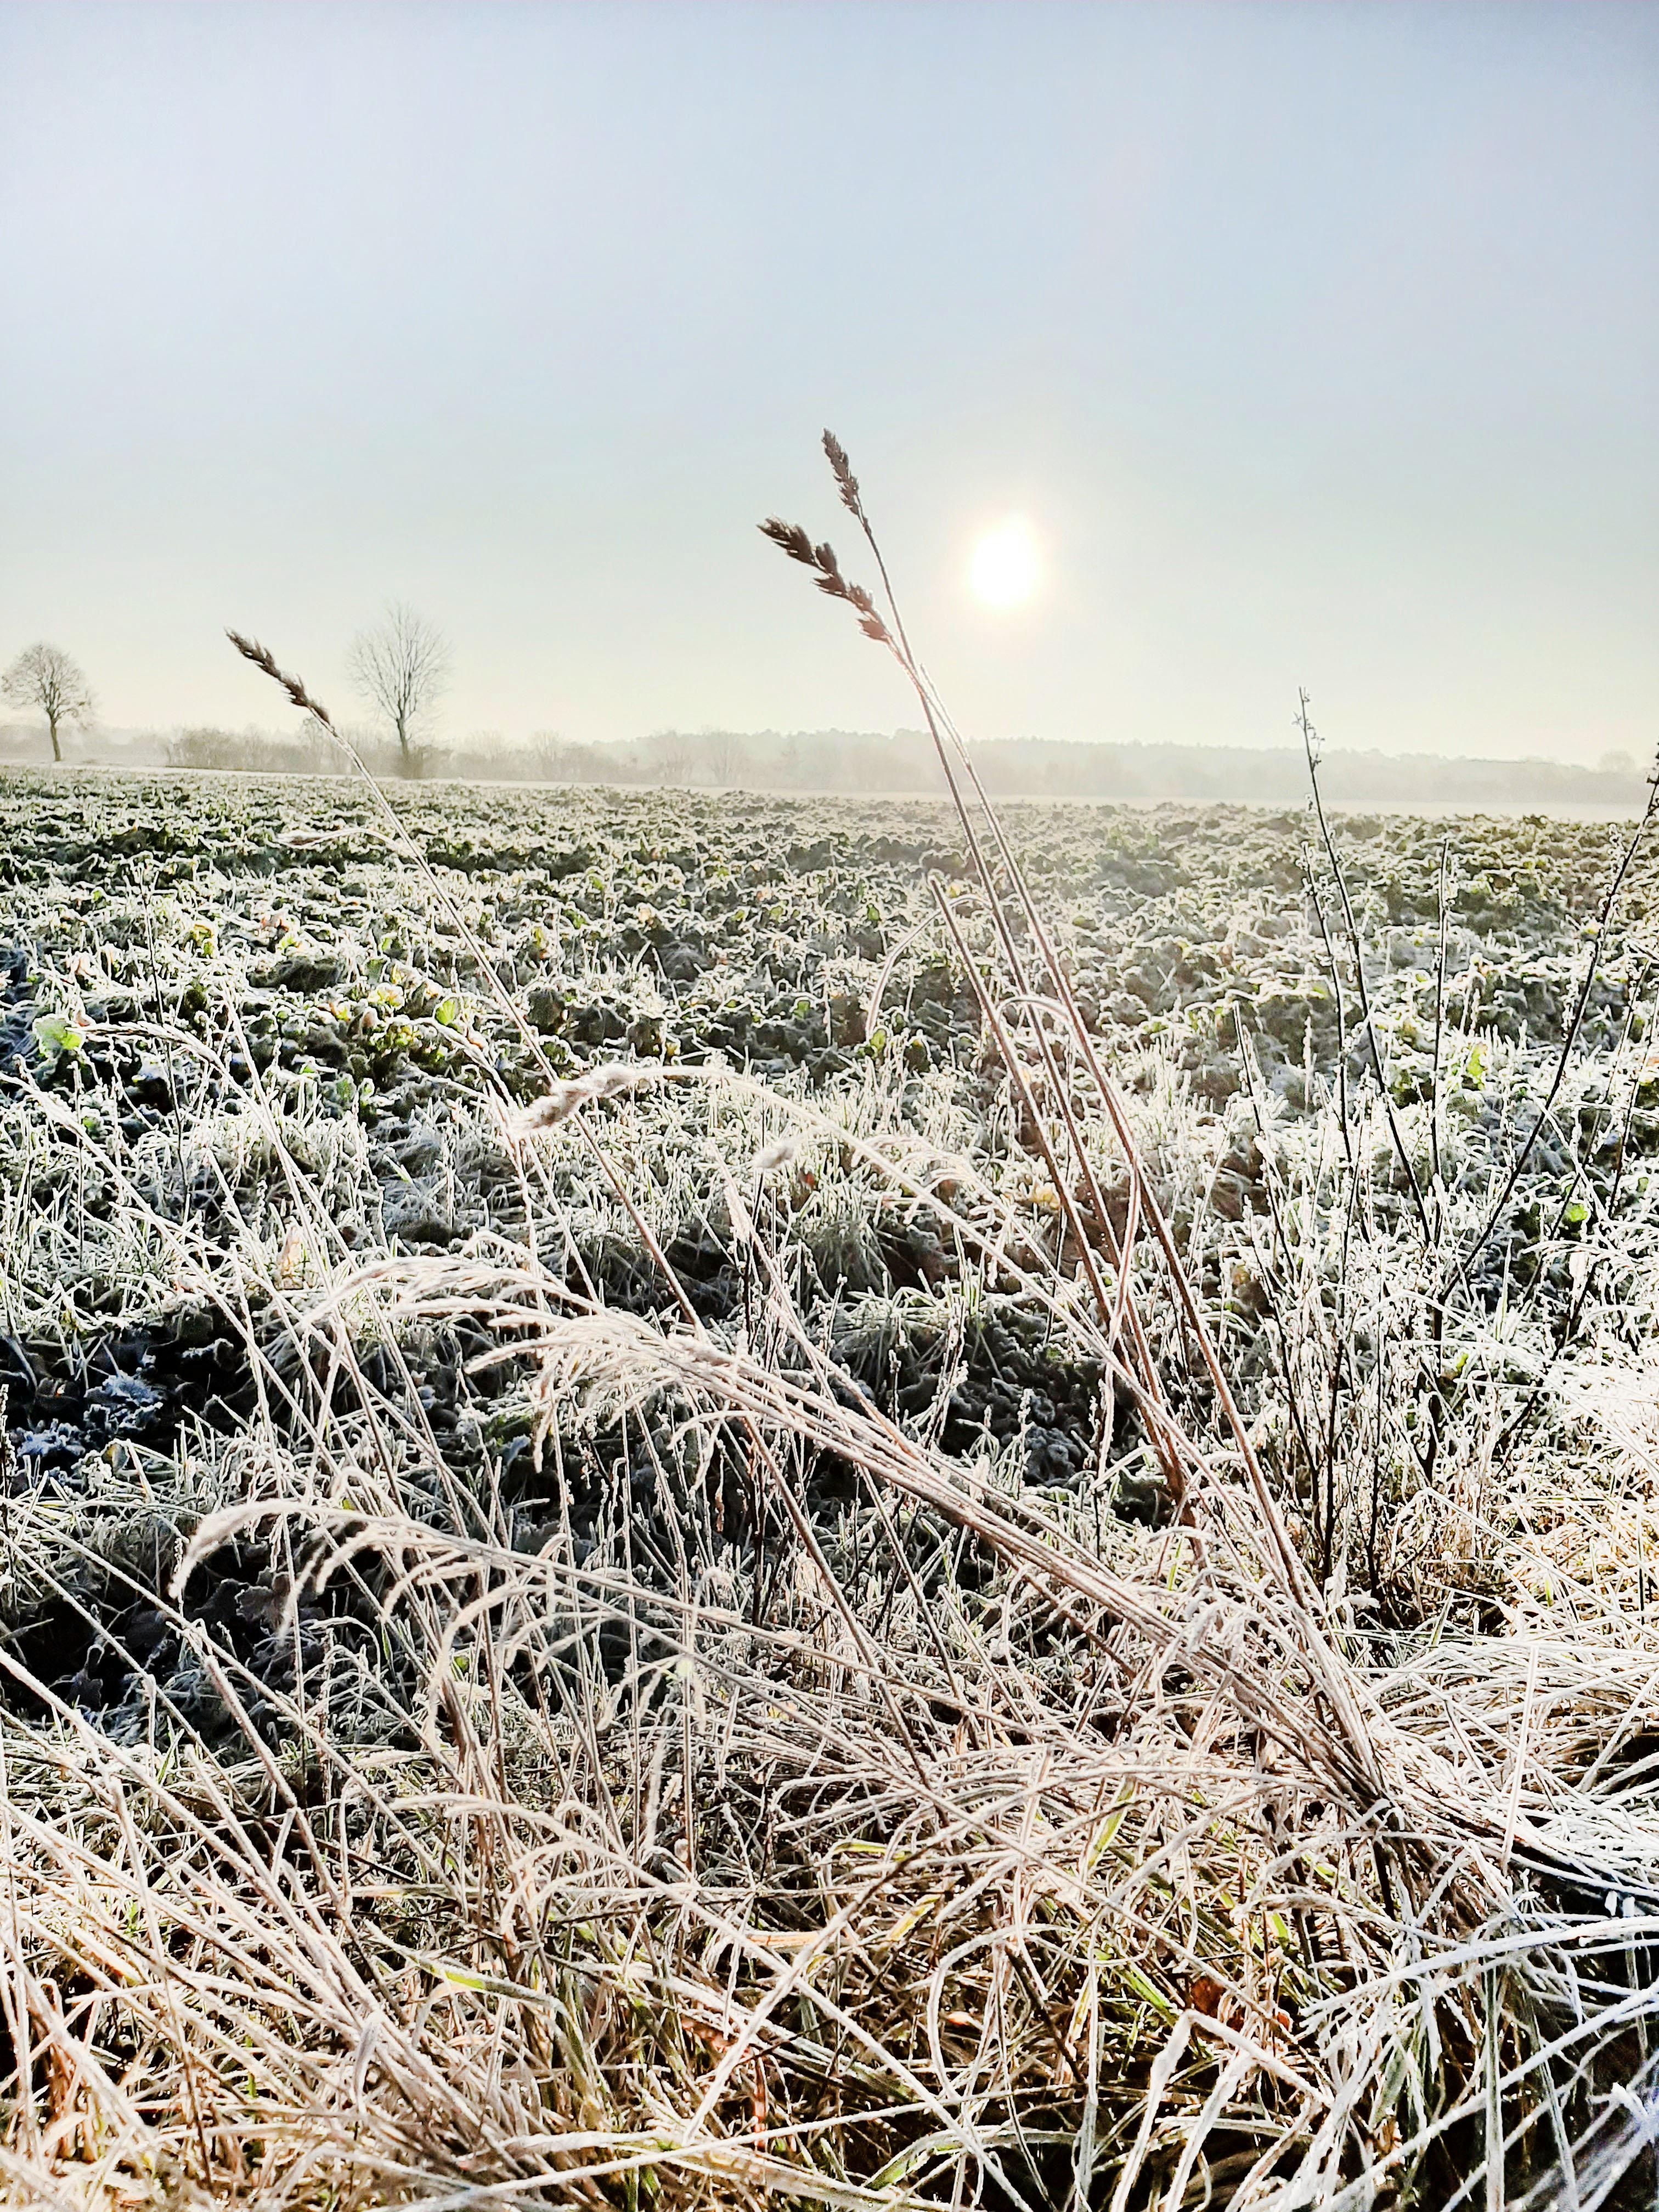 N a t u r ♡
#natur #landschaft #winter #frost #naturliebe